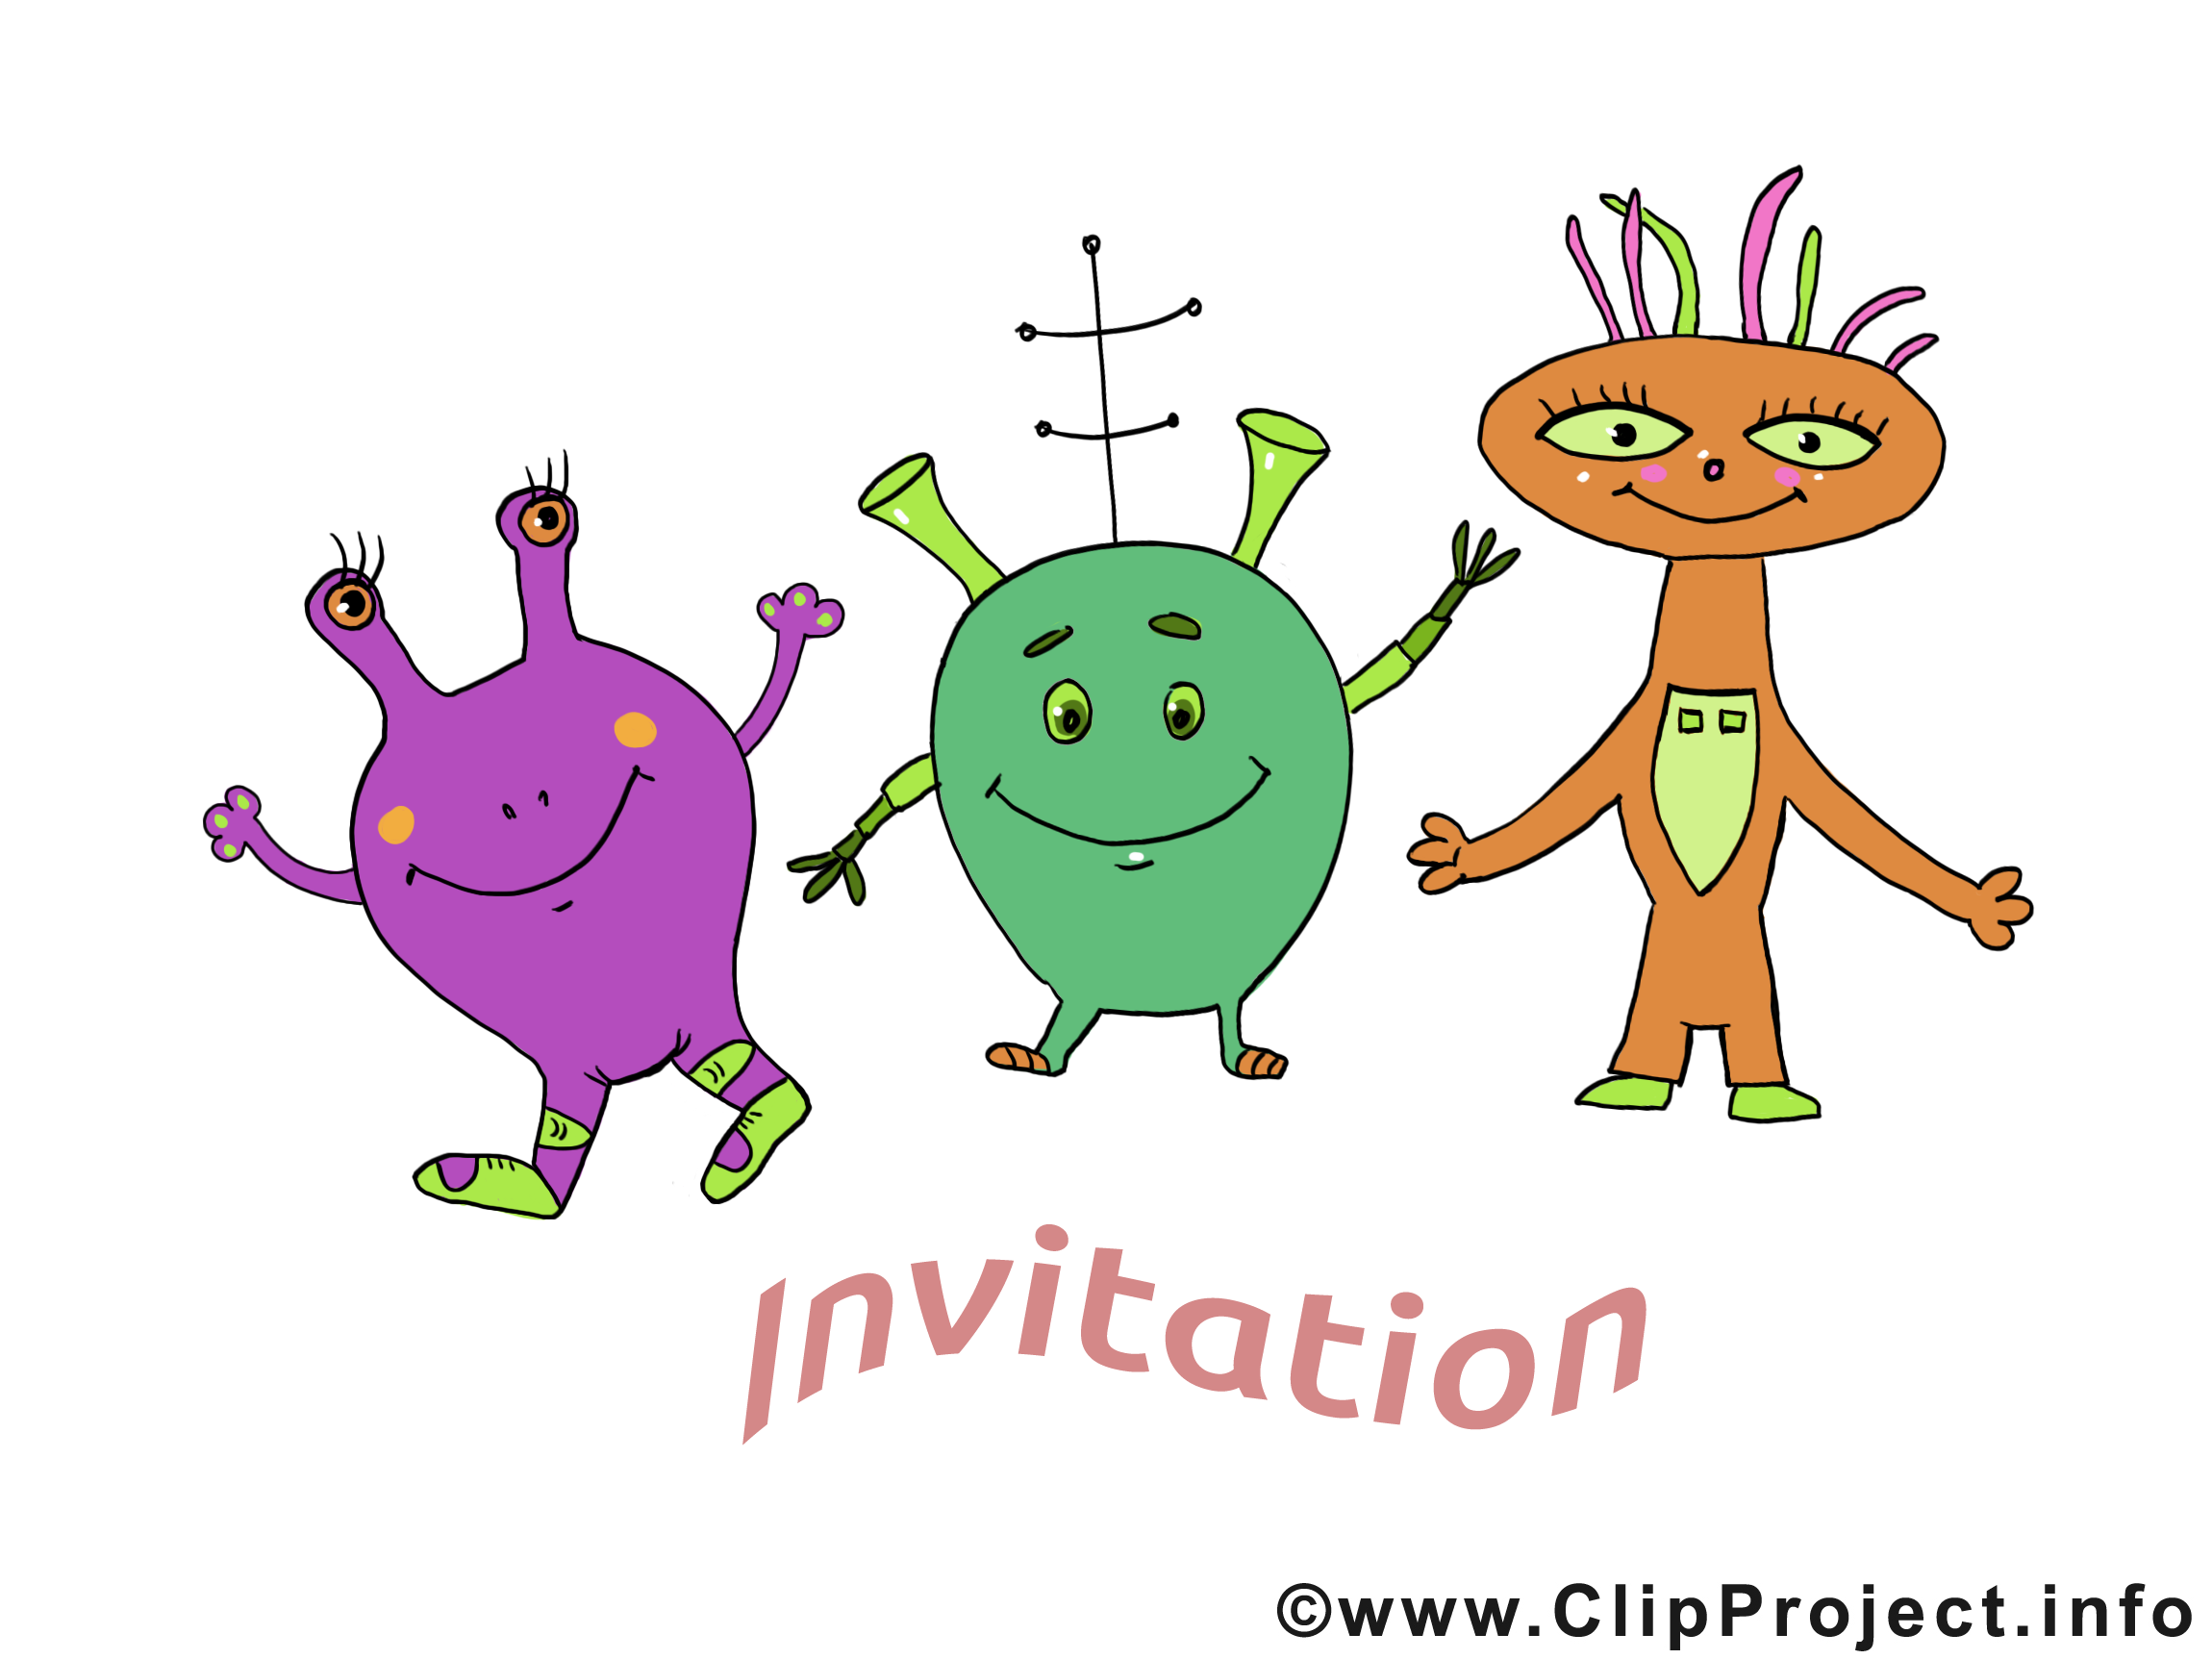 clipart gratuit invitation - photo #21